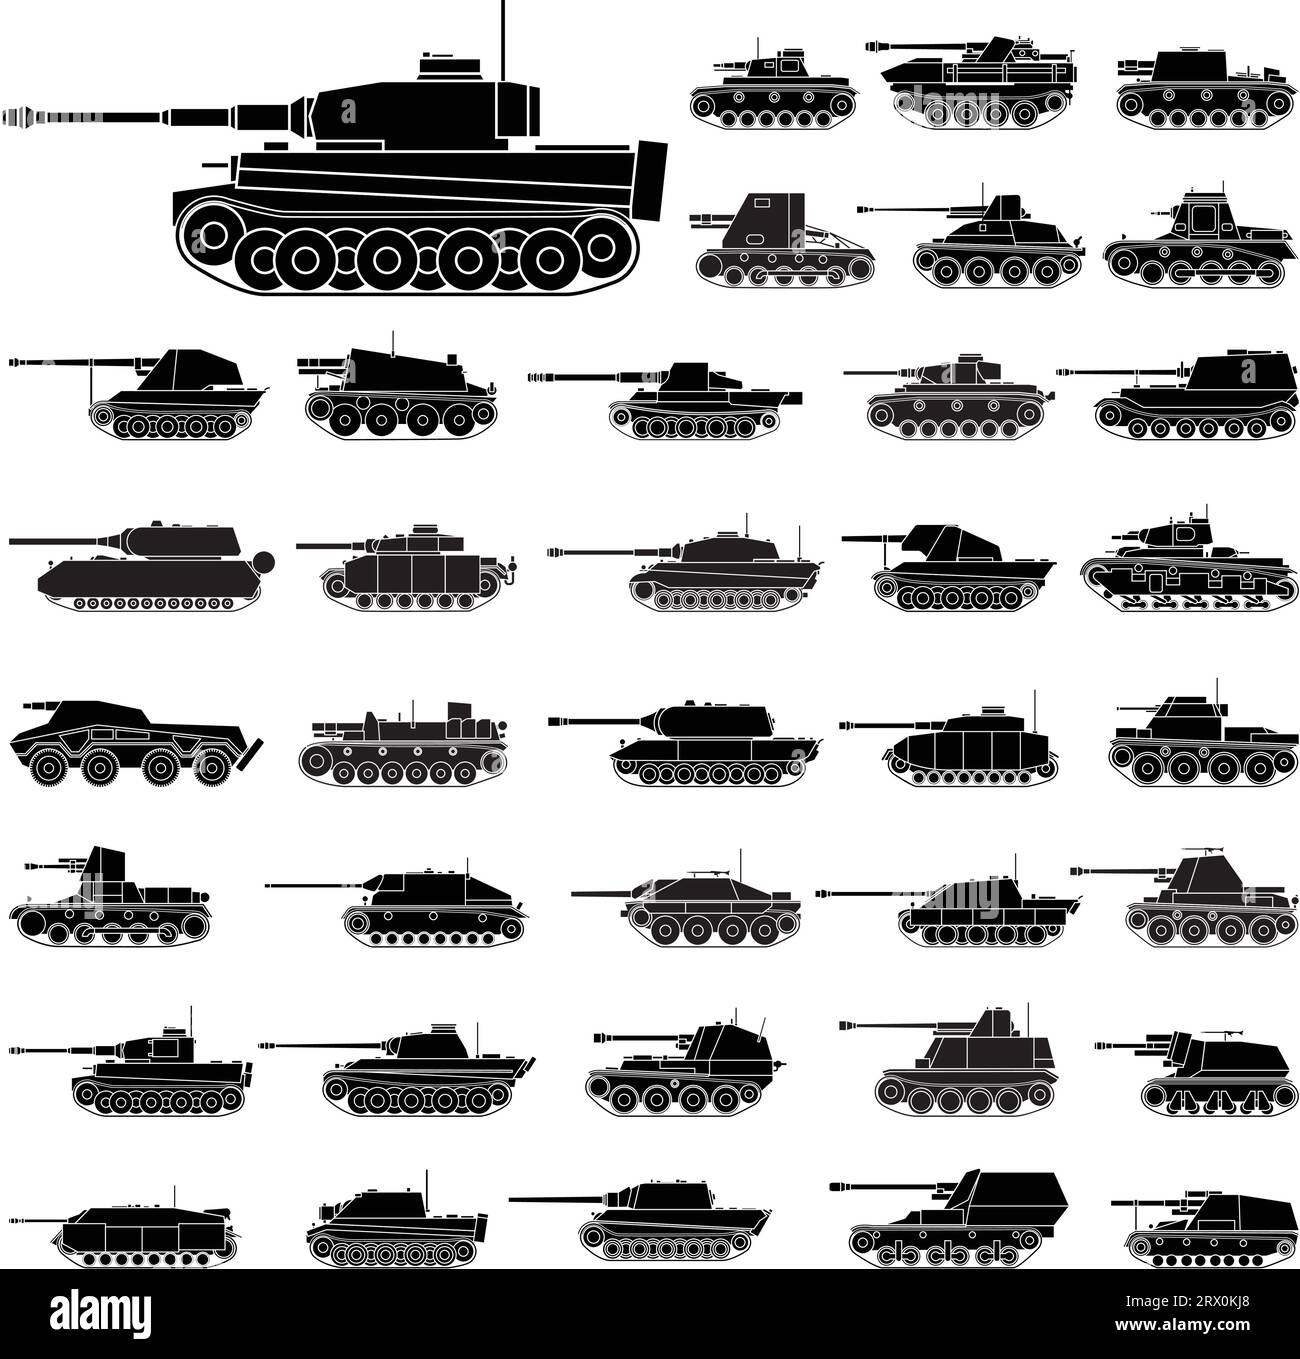 Illustration vectorielle en couches des chars allemands qui seront utilisés dans la Seconde Guerre mondiale Illustration de Vecteur